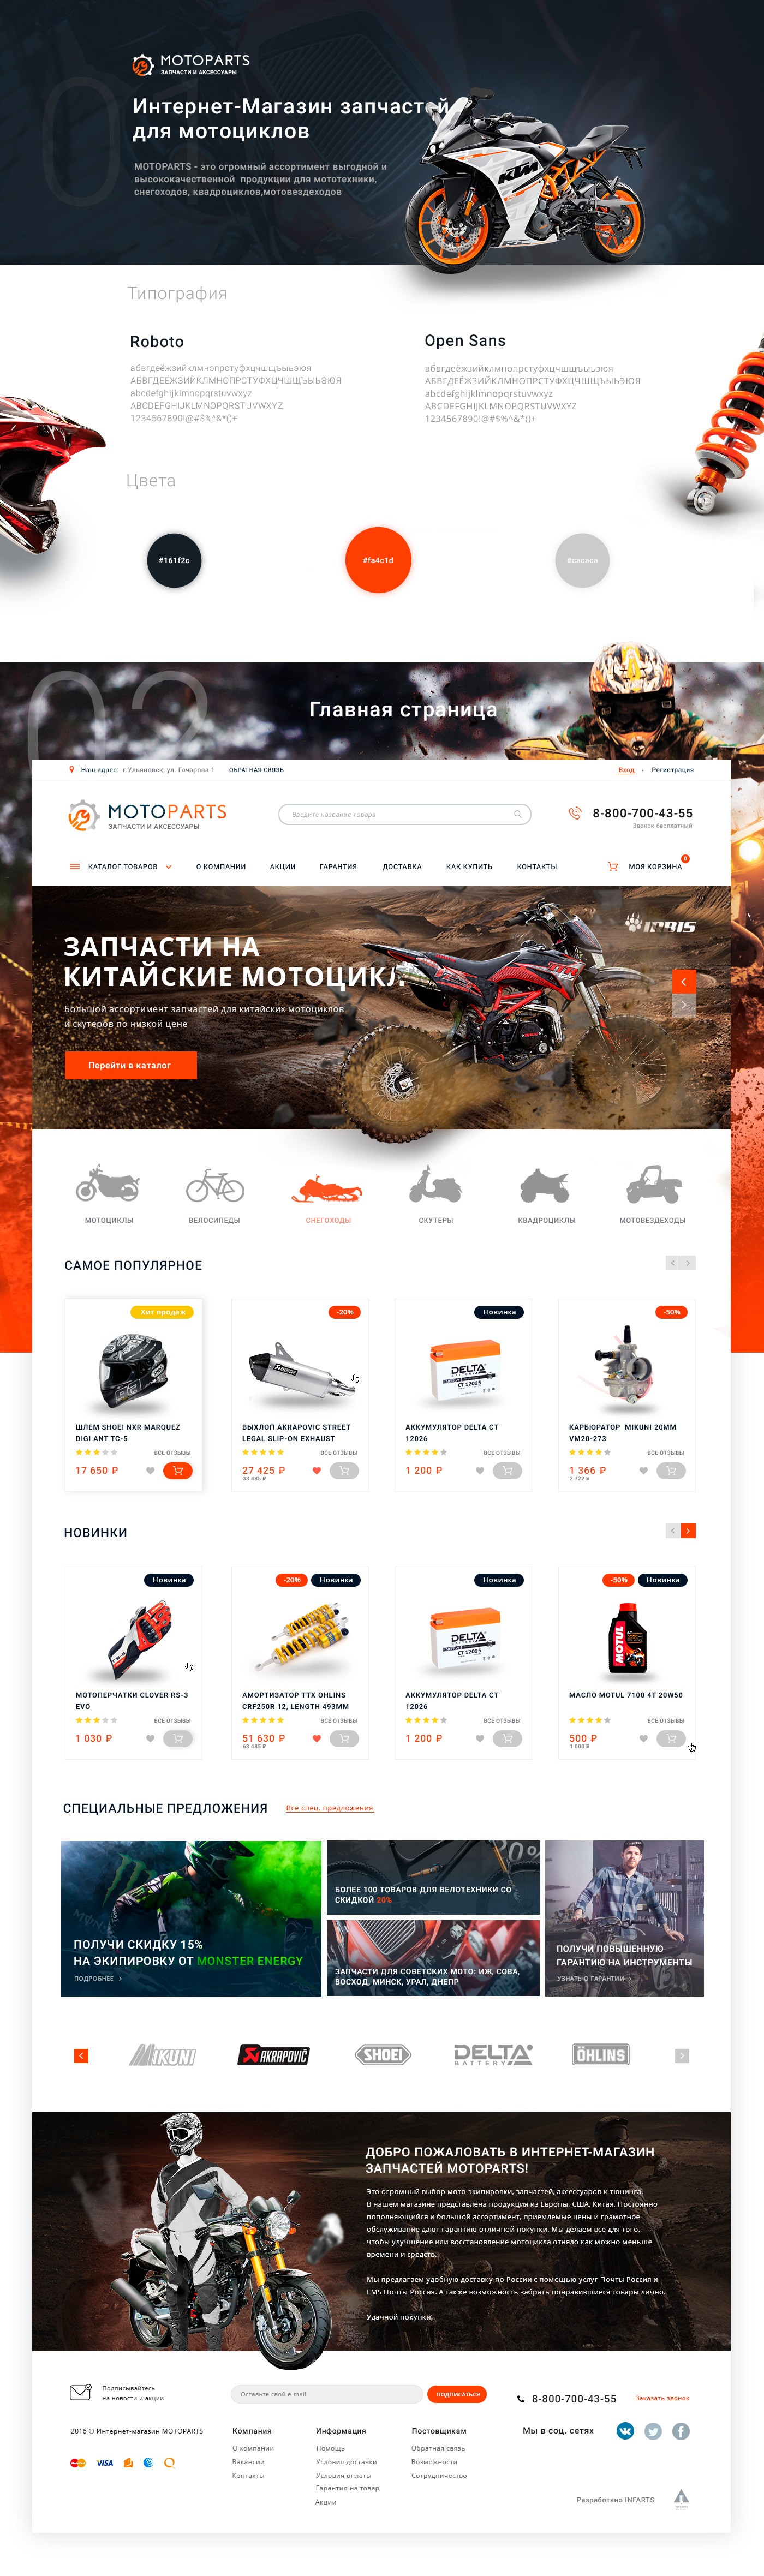 摩托车配件购物商城网页设计